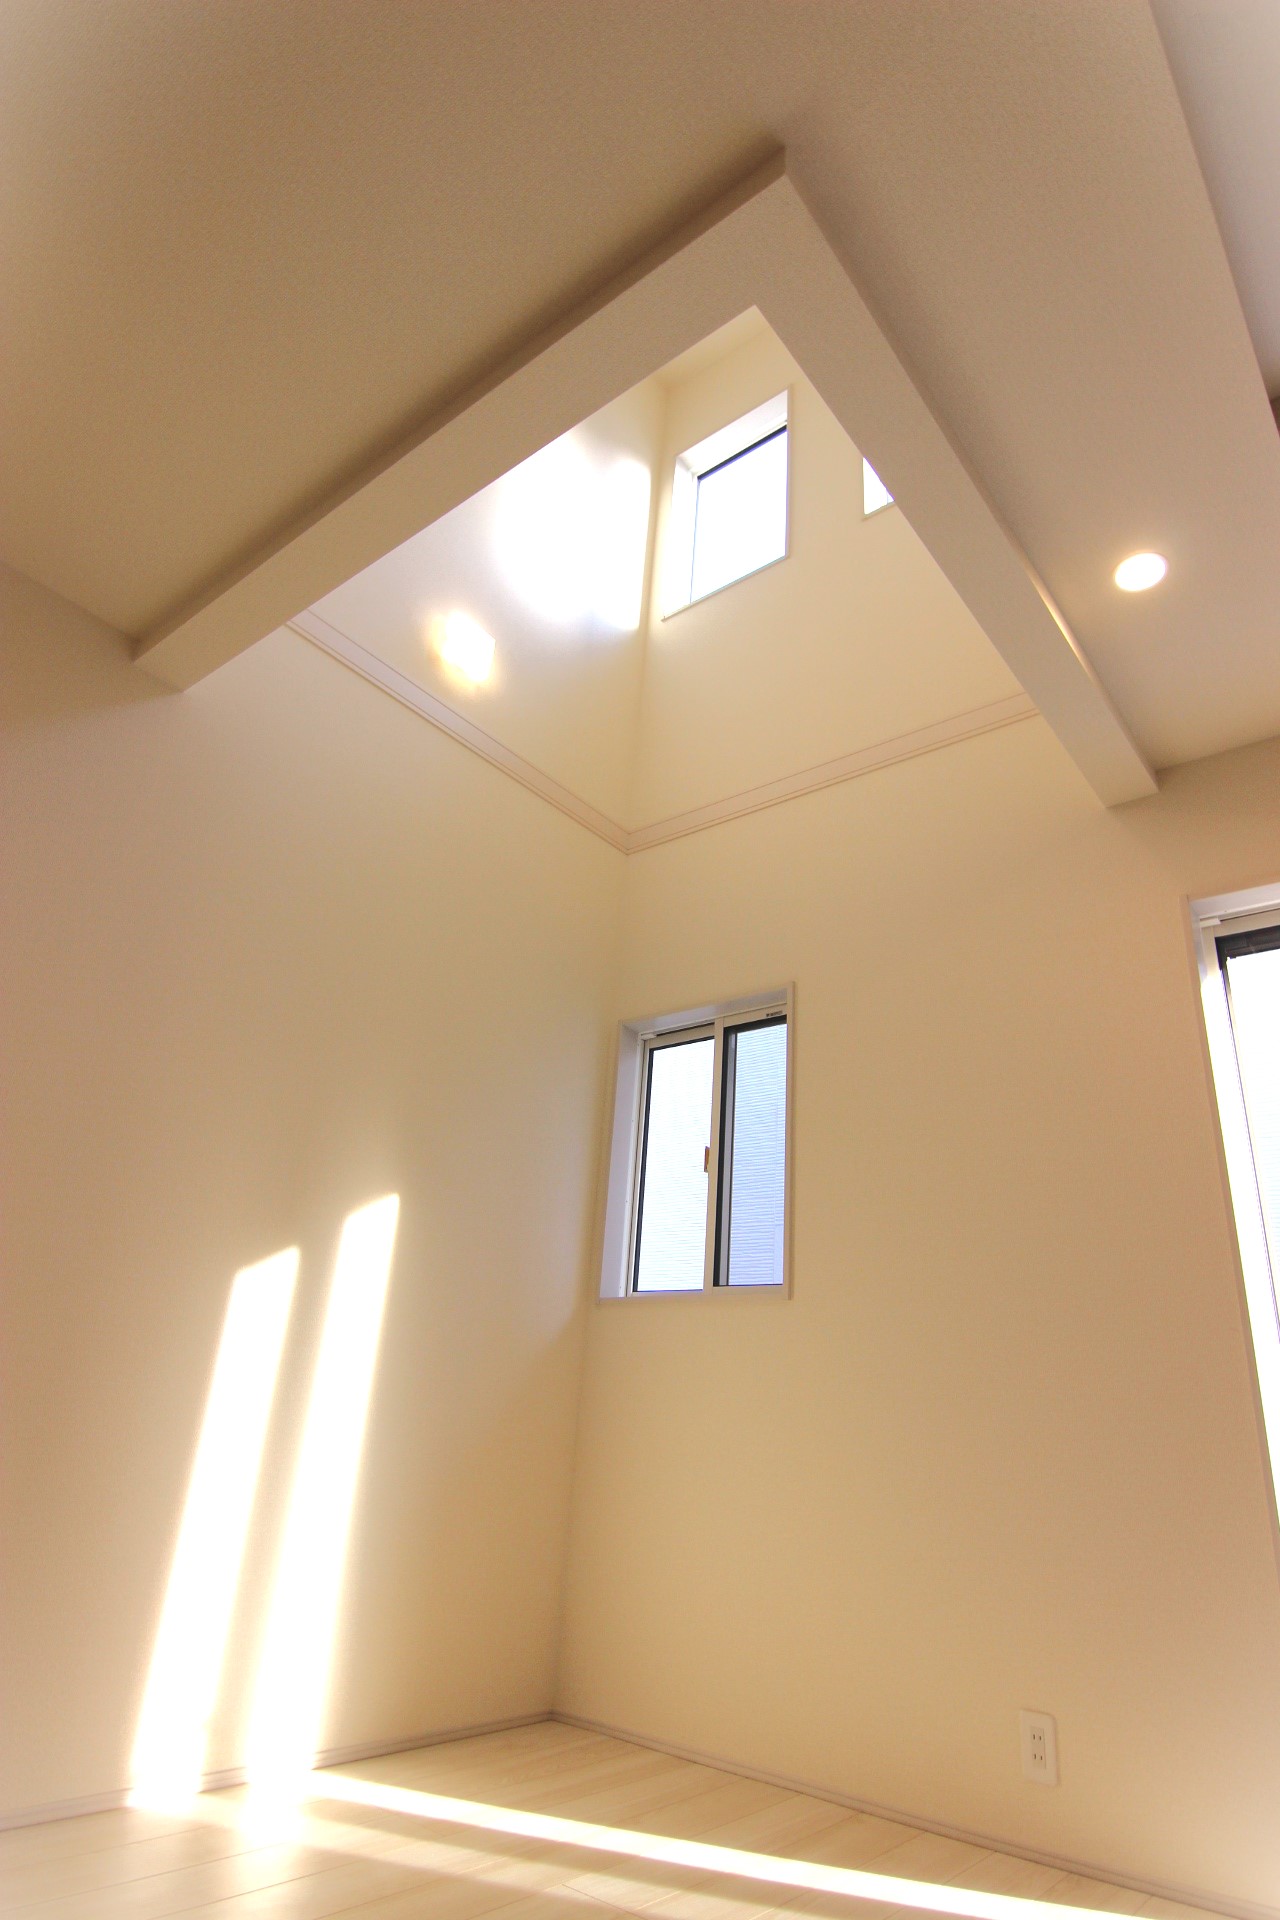 【6号棟:リビング内吹抜け】　高い天井の上部の小窓から光が差し込み、リビングを明るくさせ、開放感を演出します。